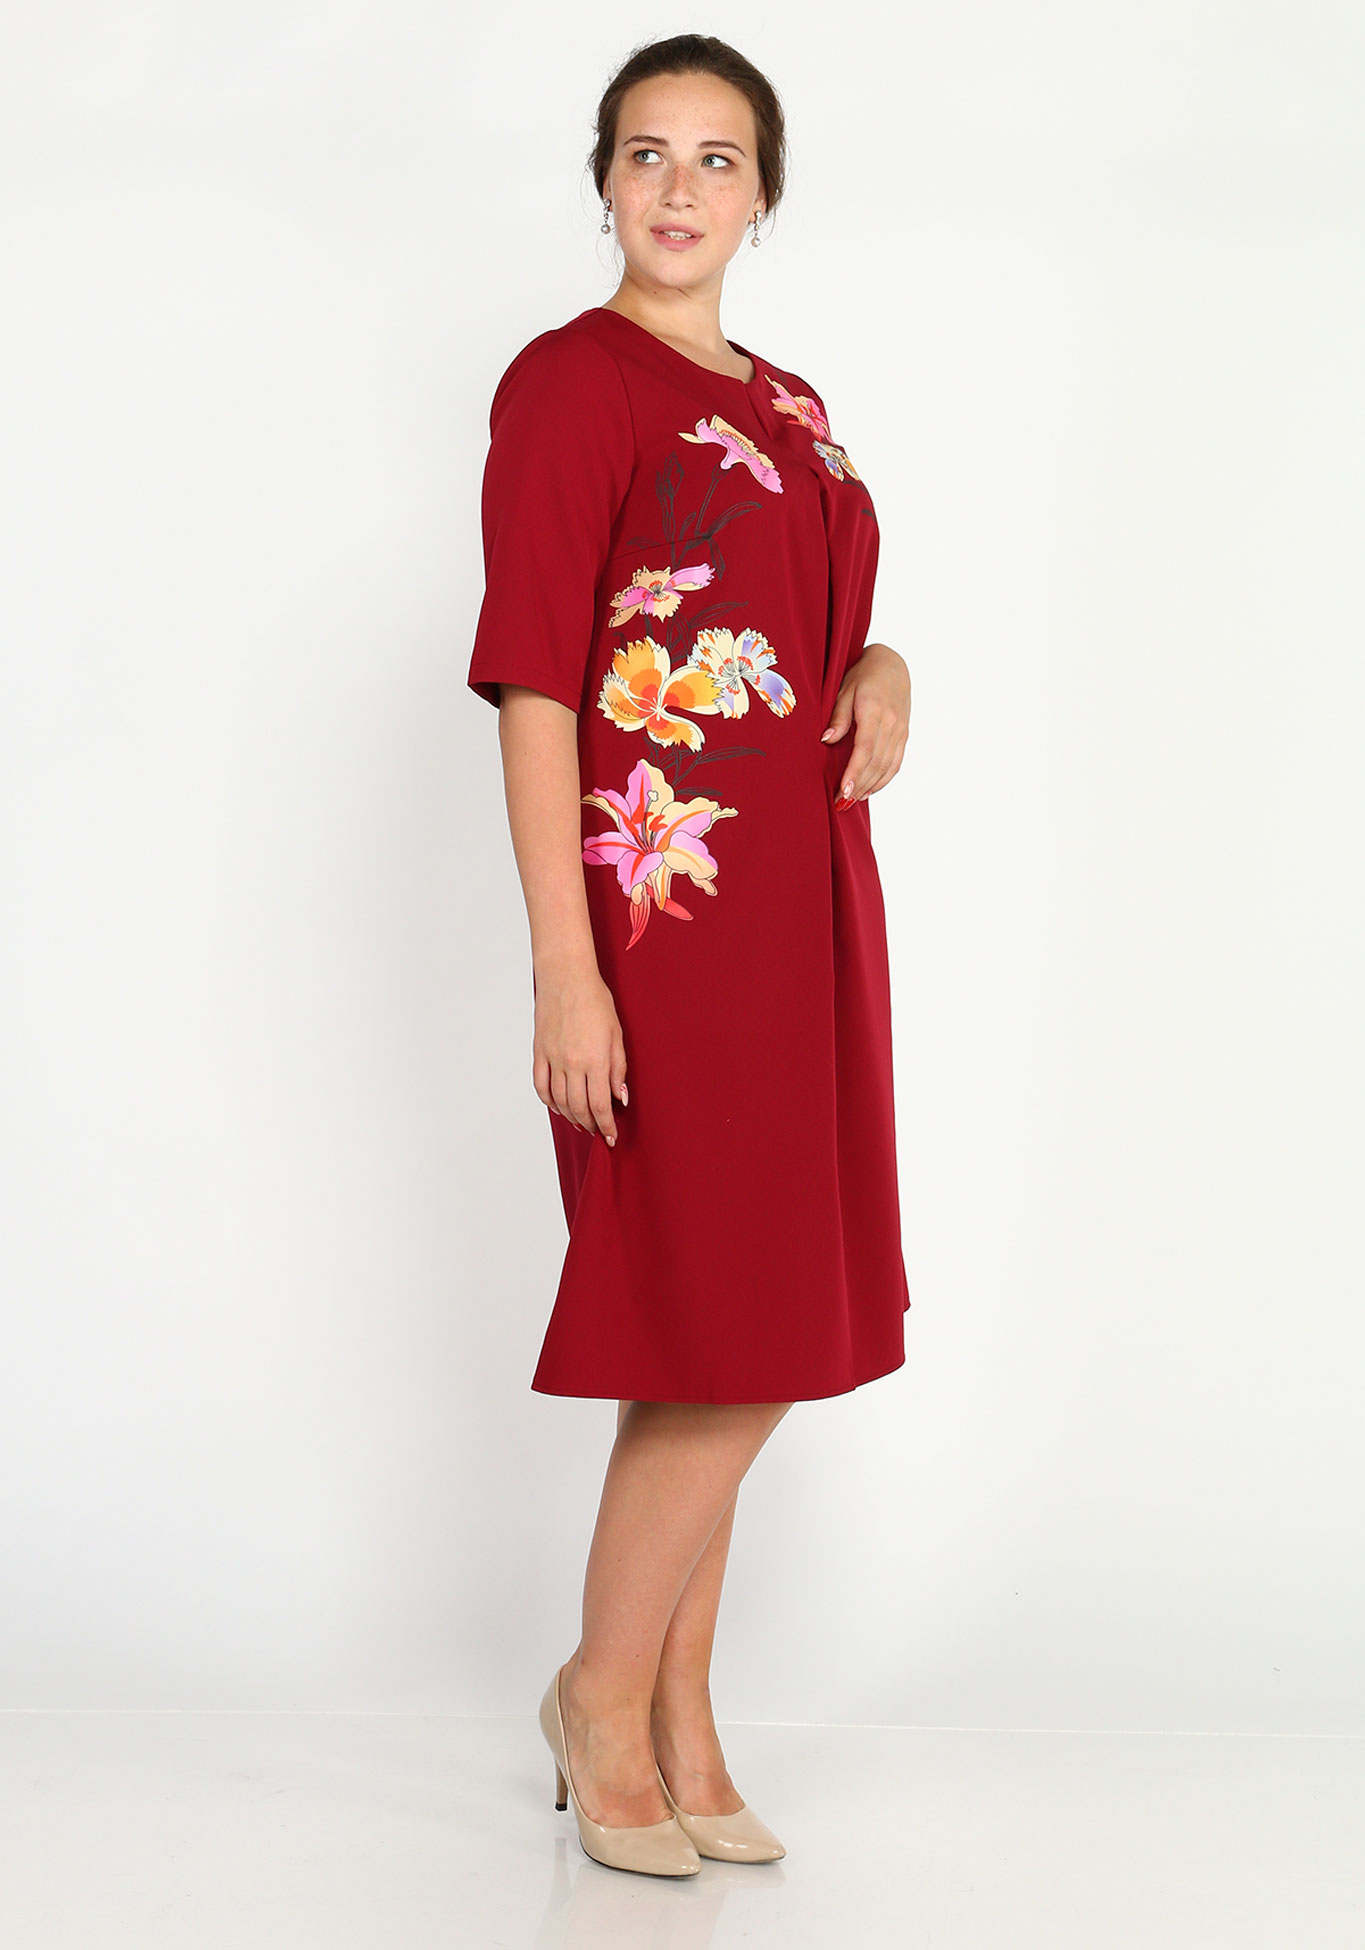 Платье-миди с шелкографией Victoria, размер 54, цвет красный - фото 6